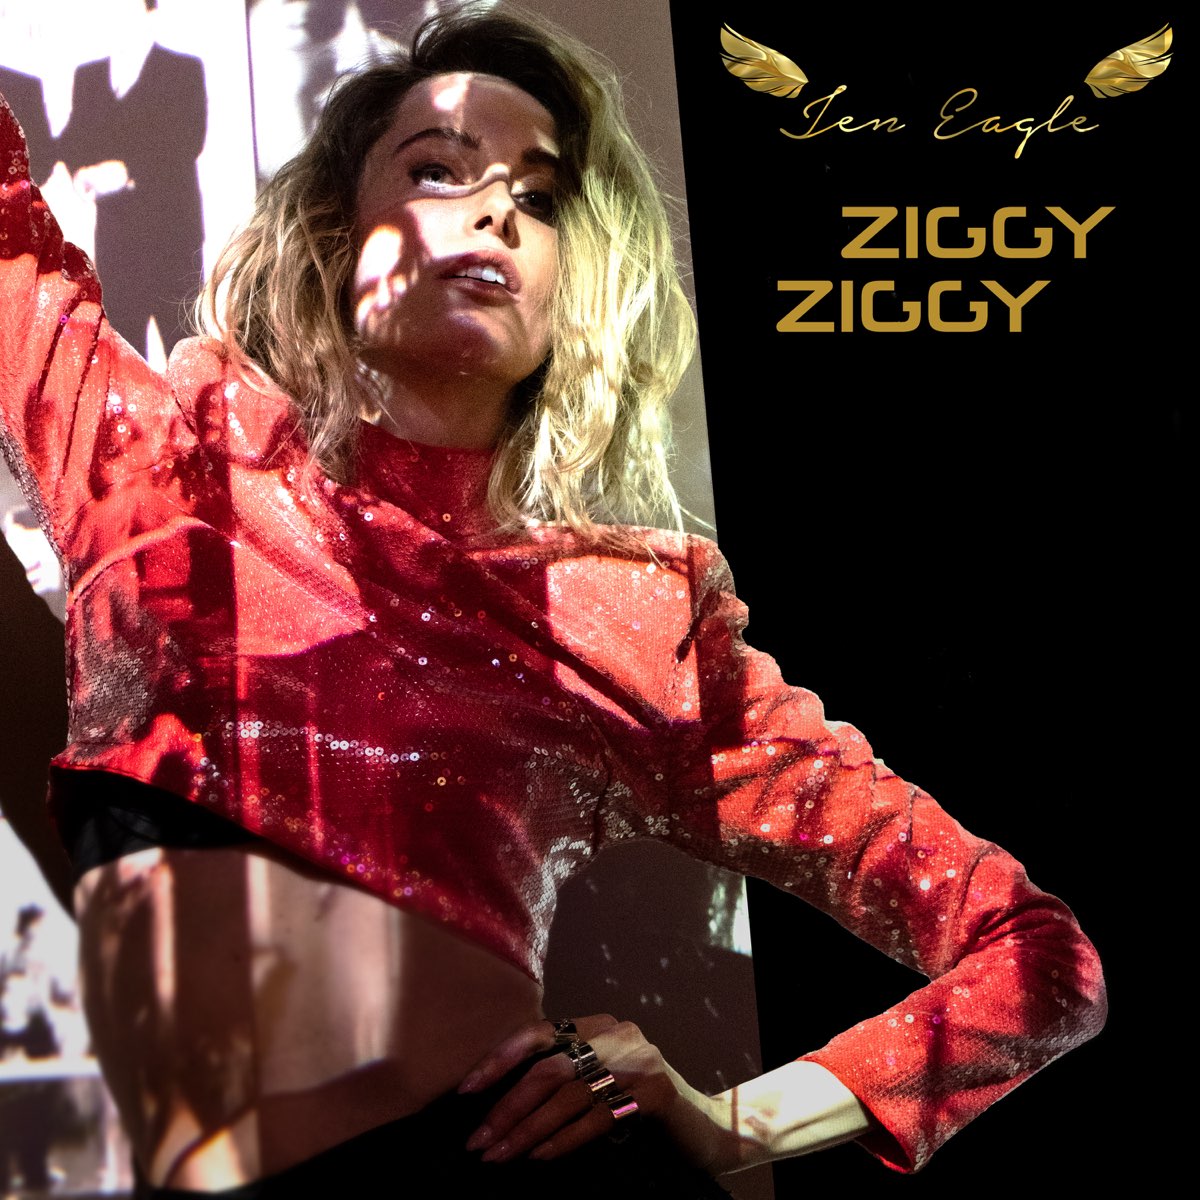 ‎ziggy Ziggy Single By Jen Eagle On Apple Music 0425